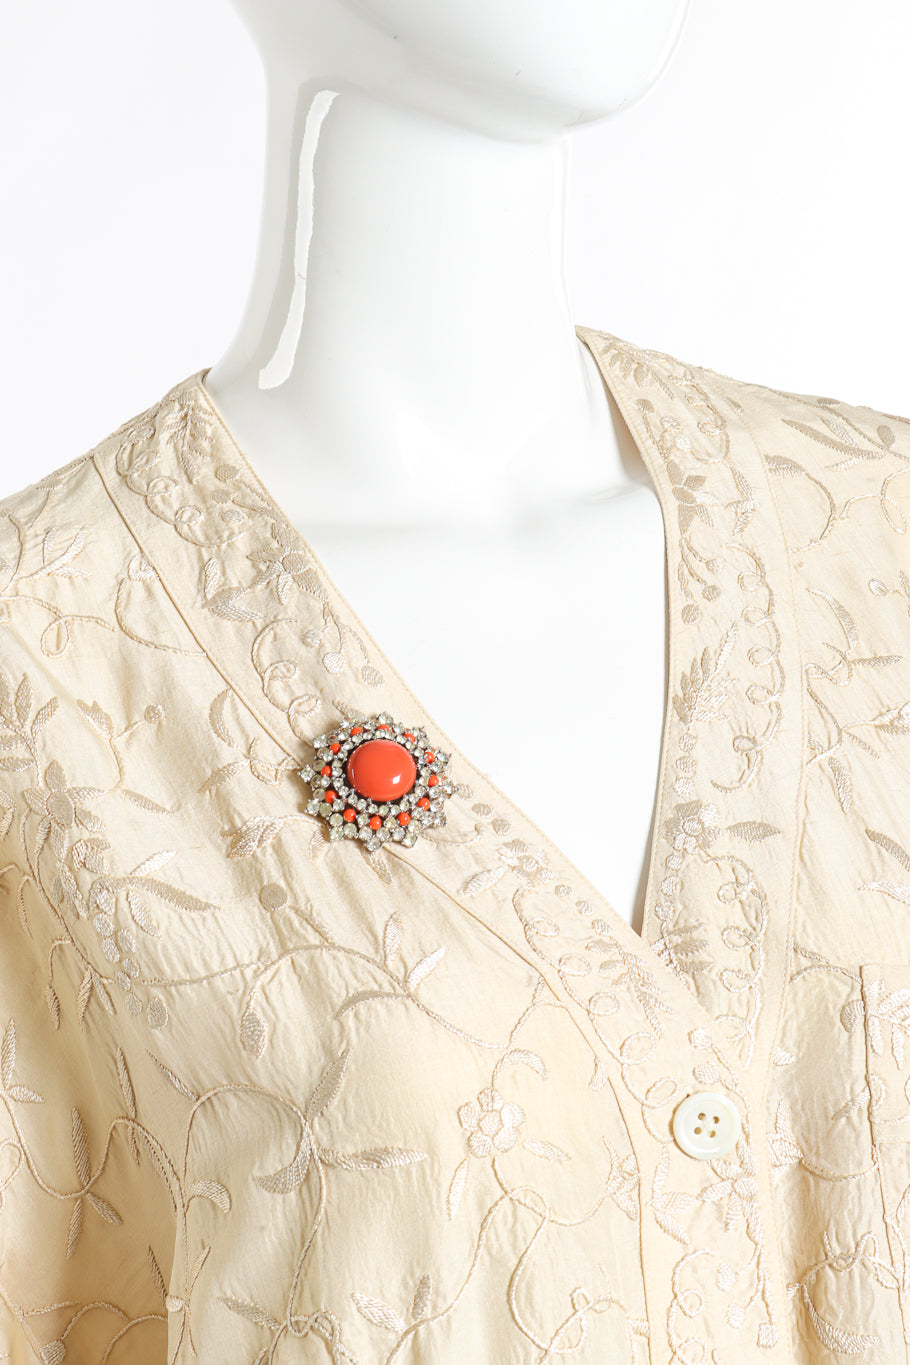 Vintage Trifari Coral Lucite Necklace & Earring Set pendant brooch on mannequin @recess la